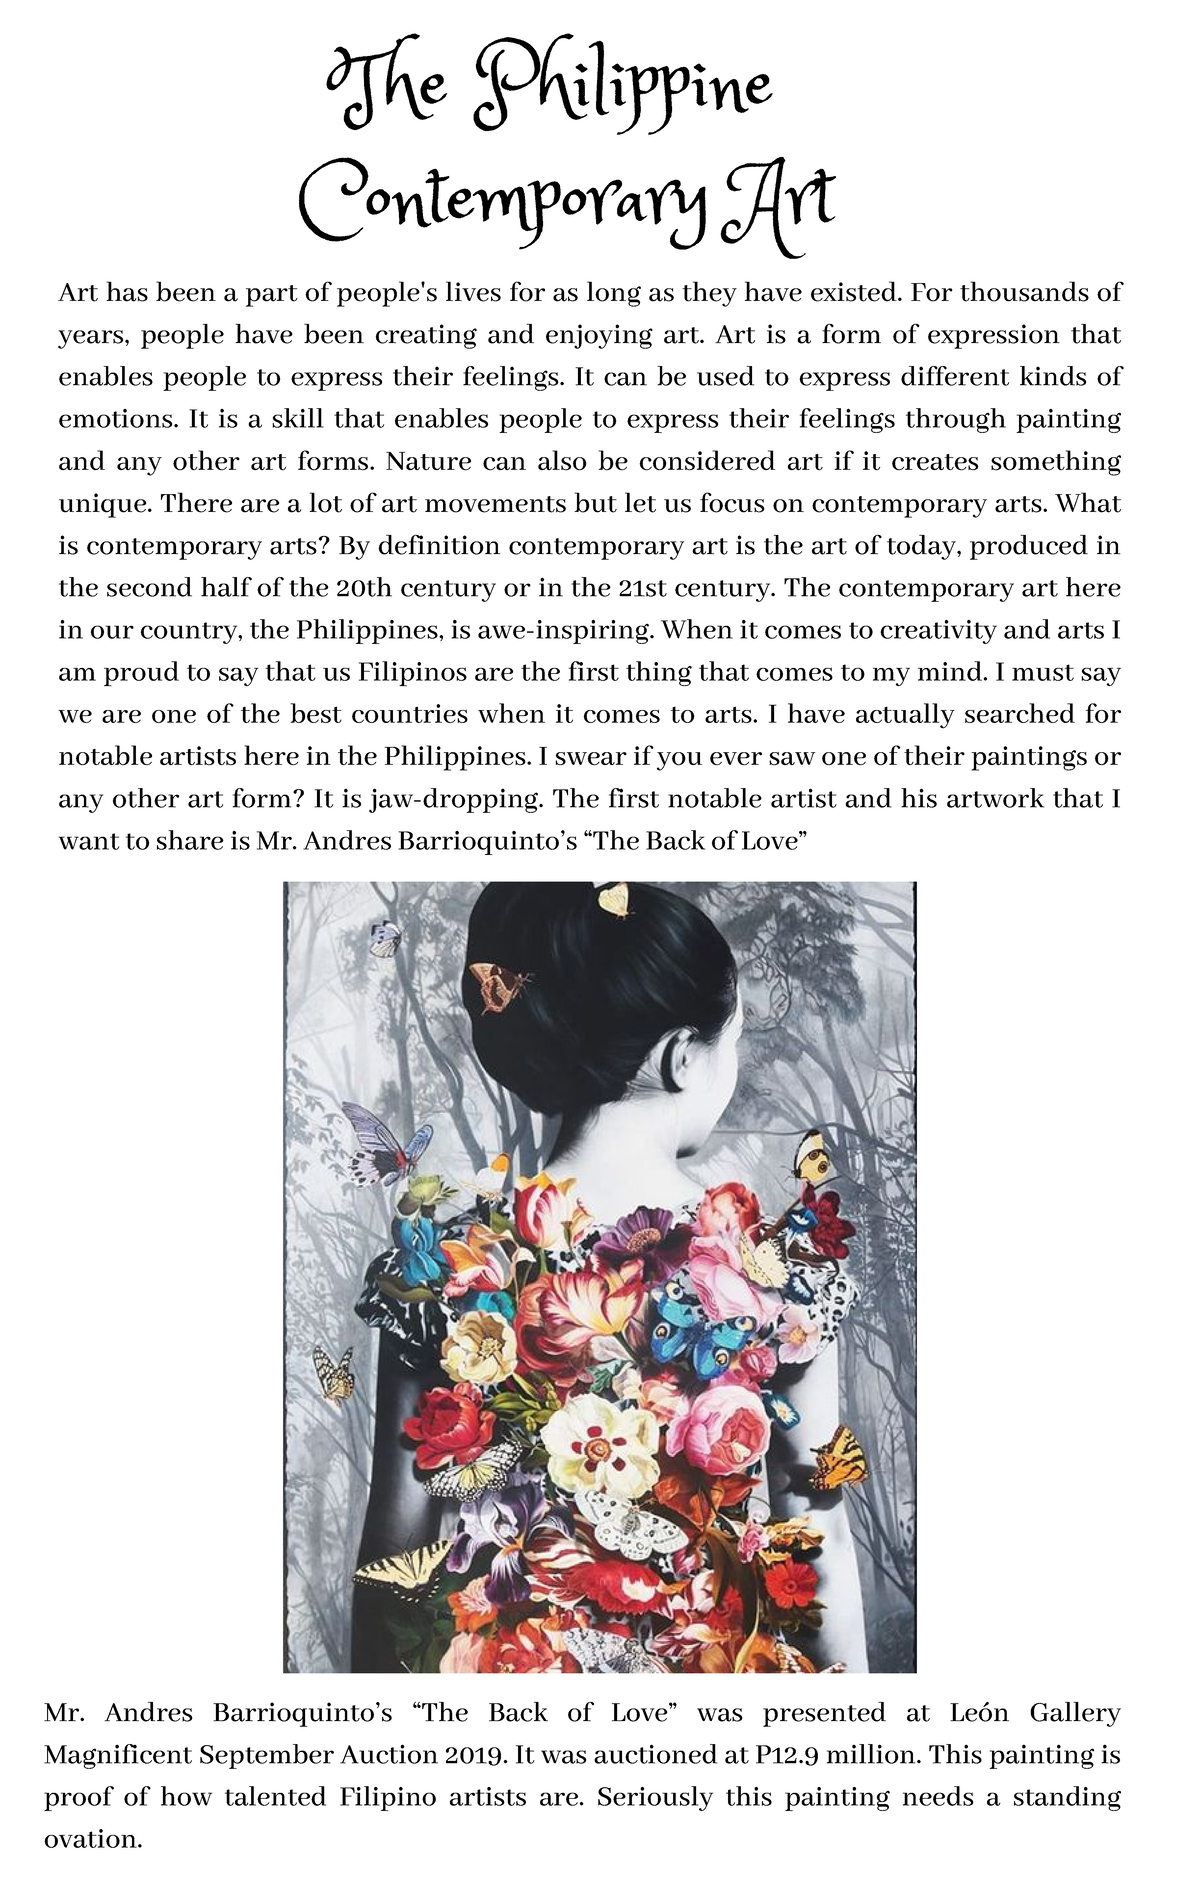 what is philippine art essay